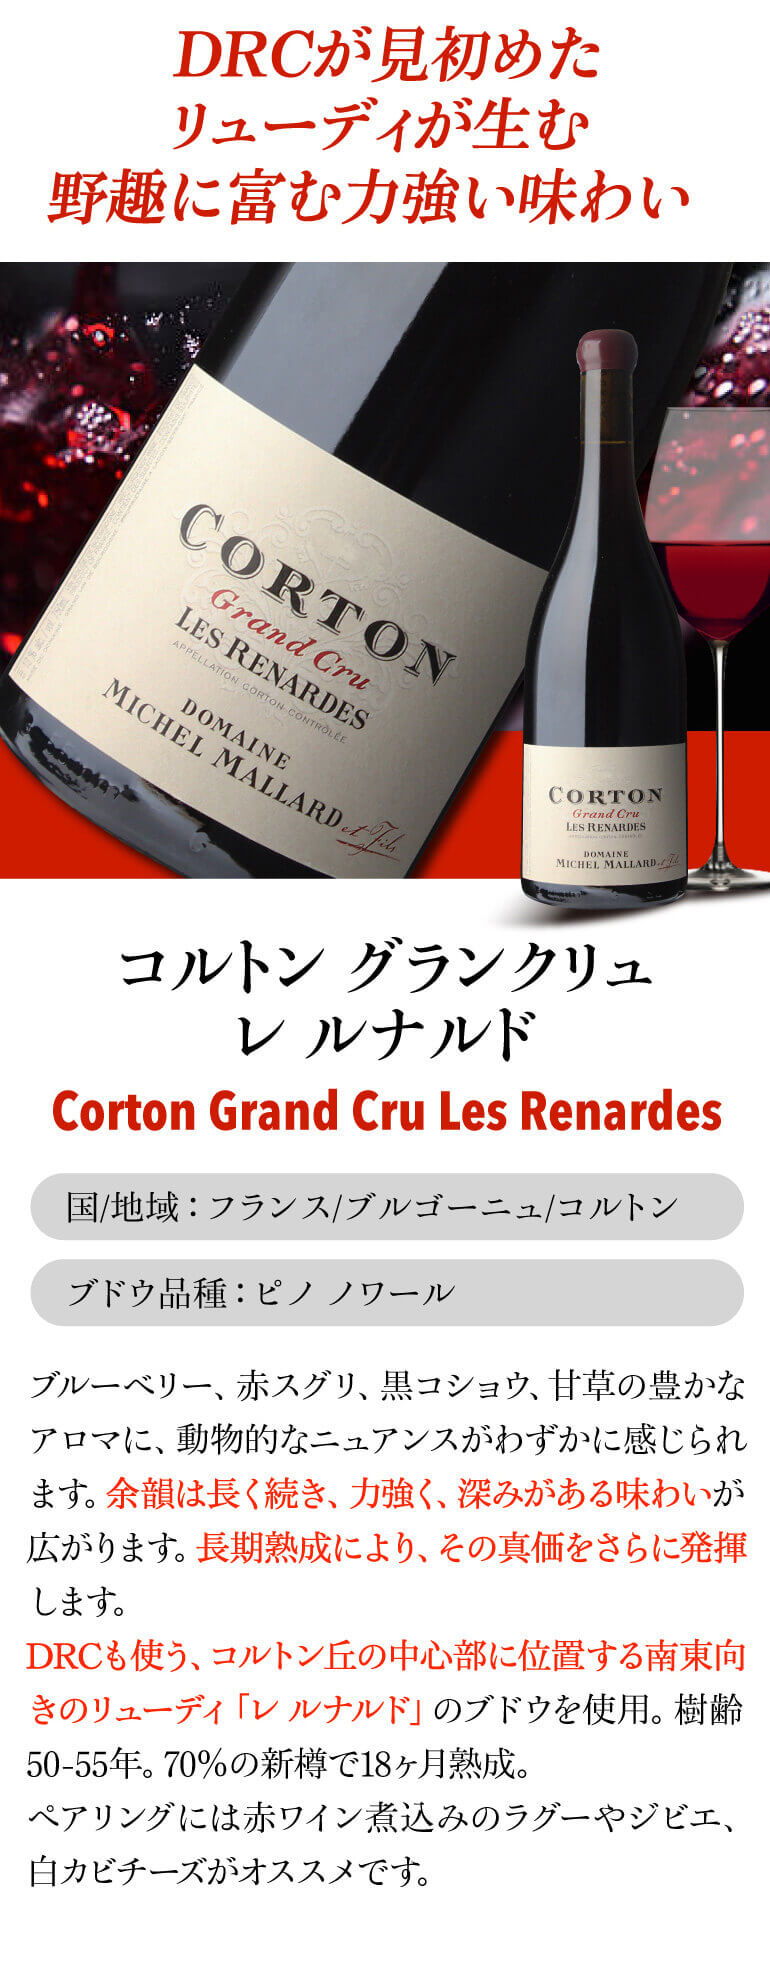 送料無料 赤ワイン コルトン グランクリュ ル ロニエ 2011 ミッシェル